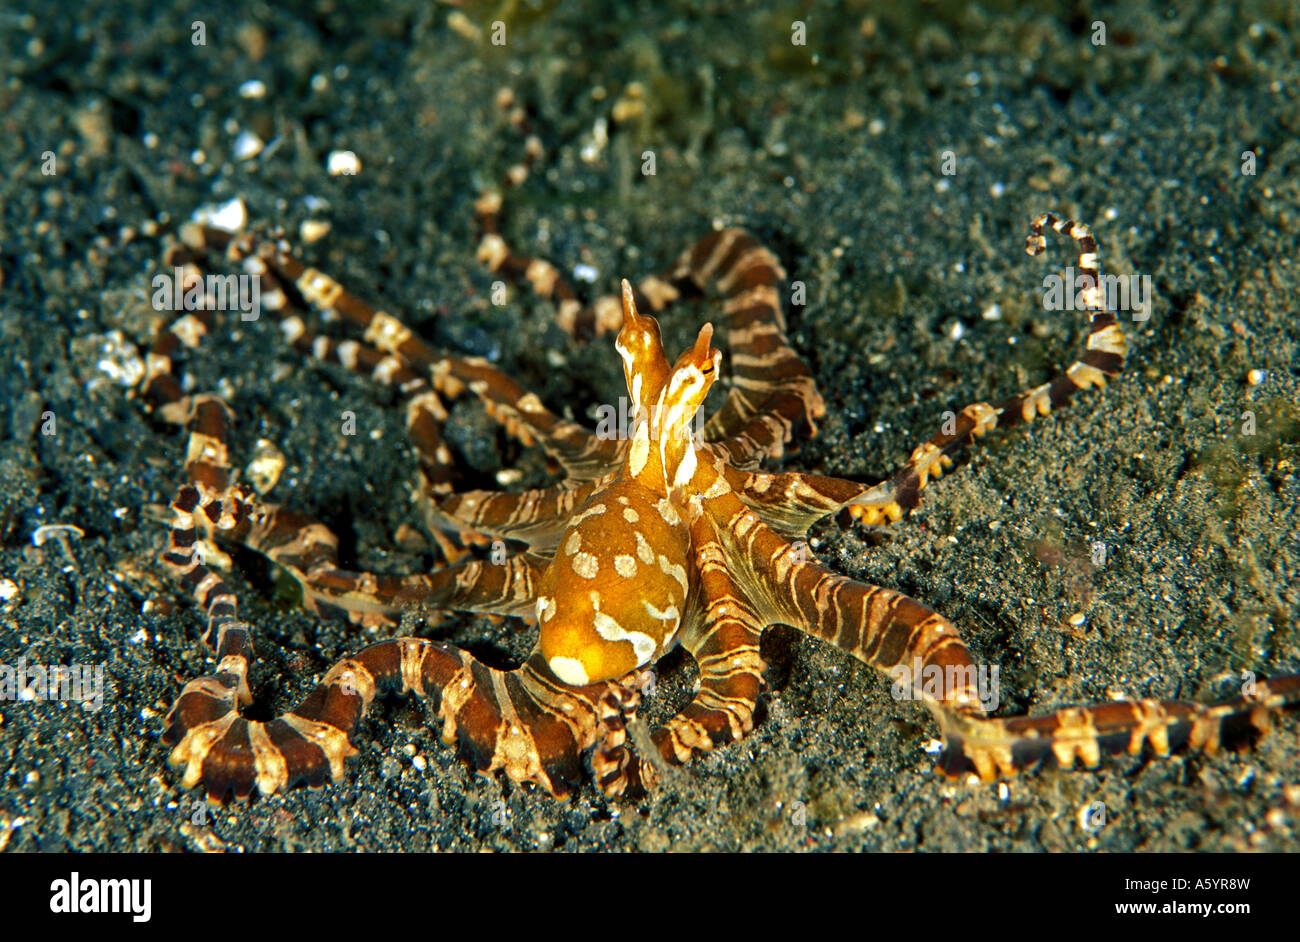 Mimic octopus Sulawesi Indonesia Stock Photo